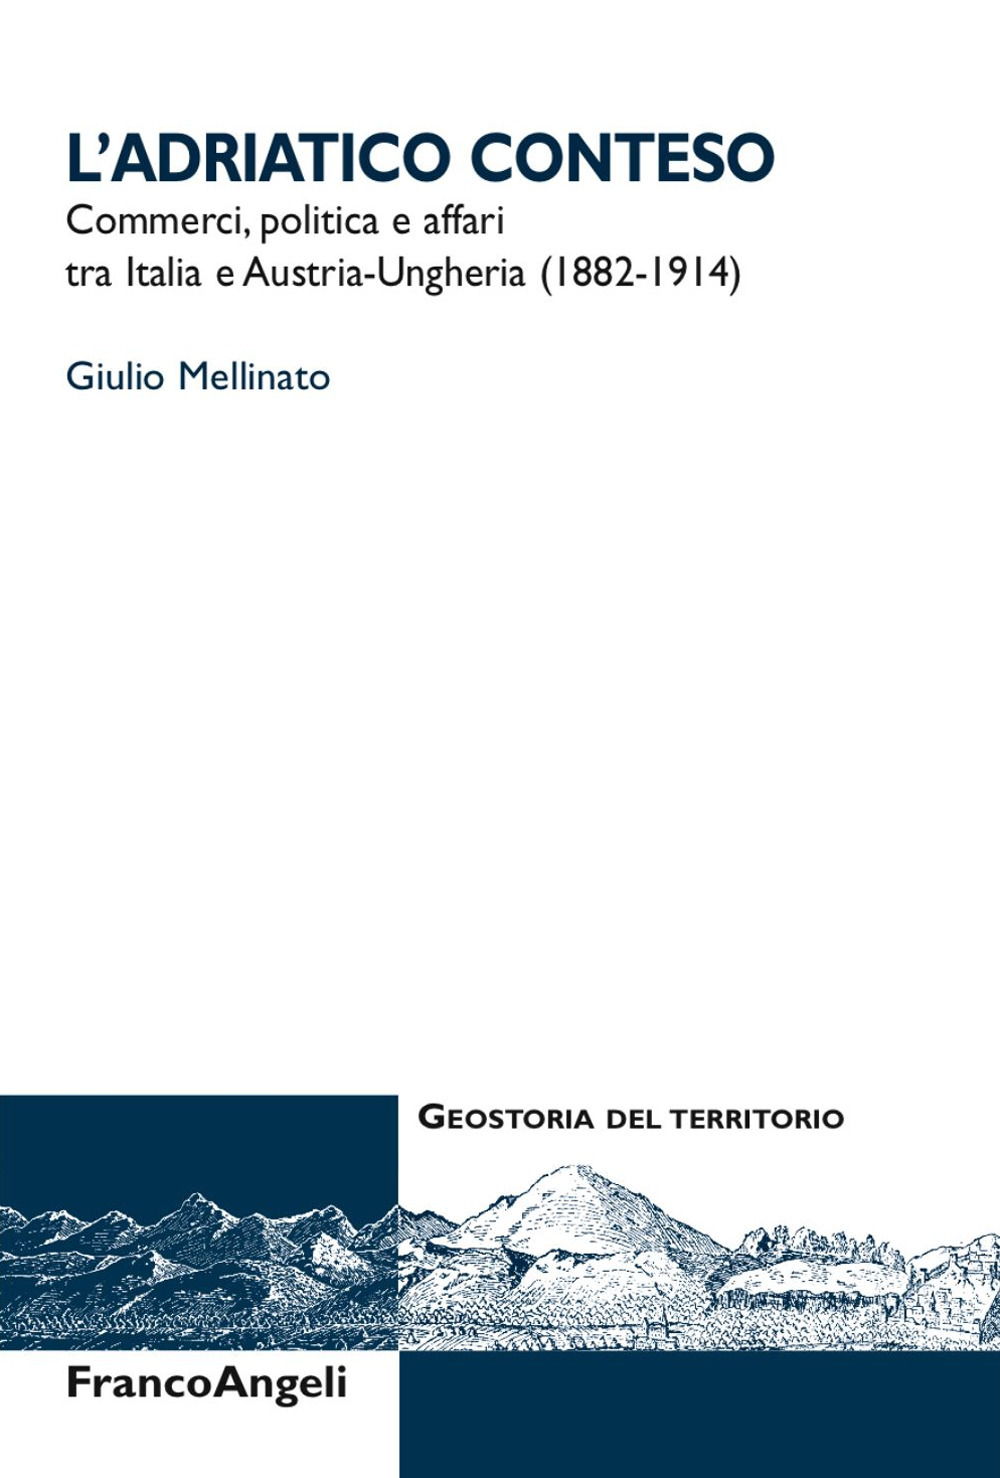 L'Adriatico conteso. Commerci, politica e affari tra Italia e Austria-Ungheria (1882-1914)